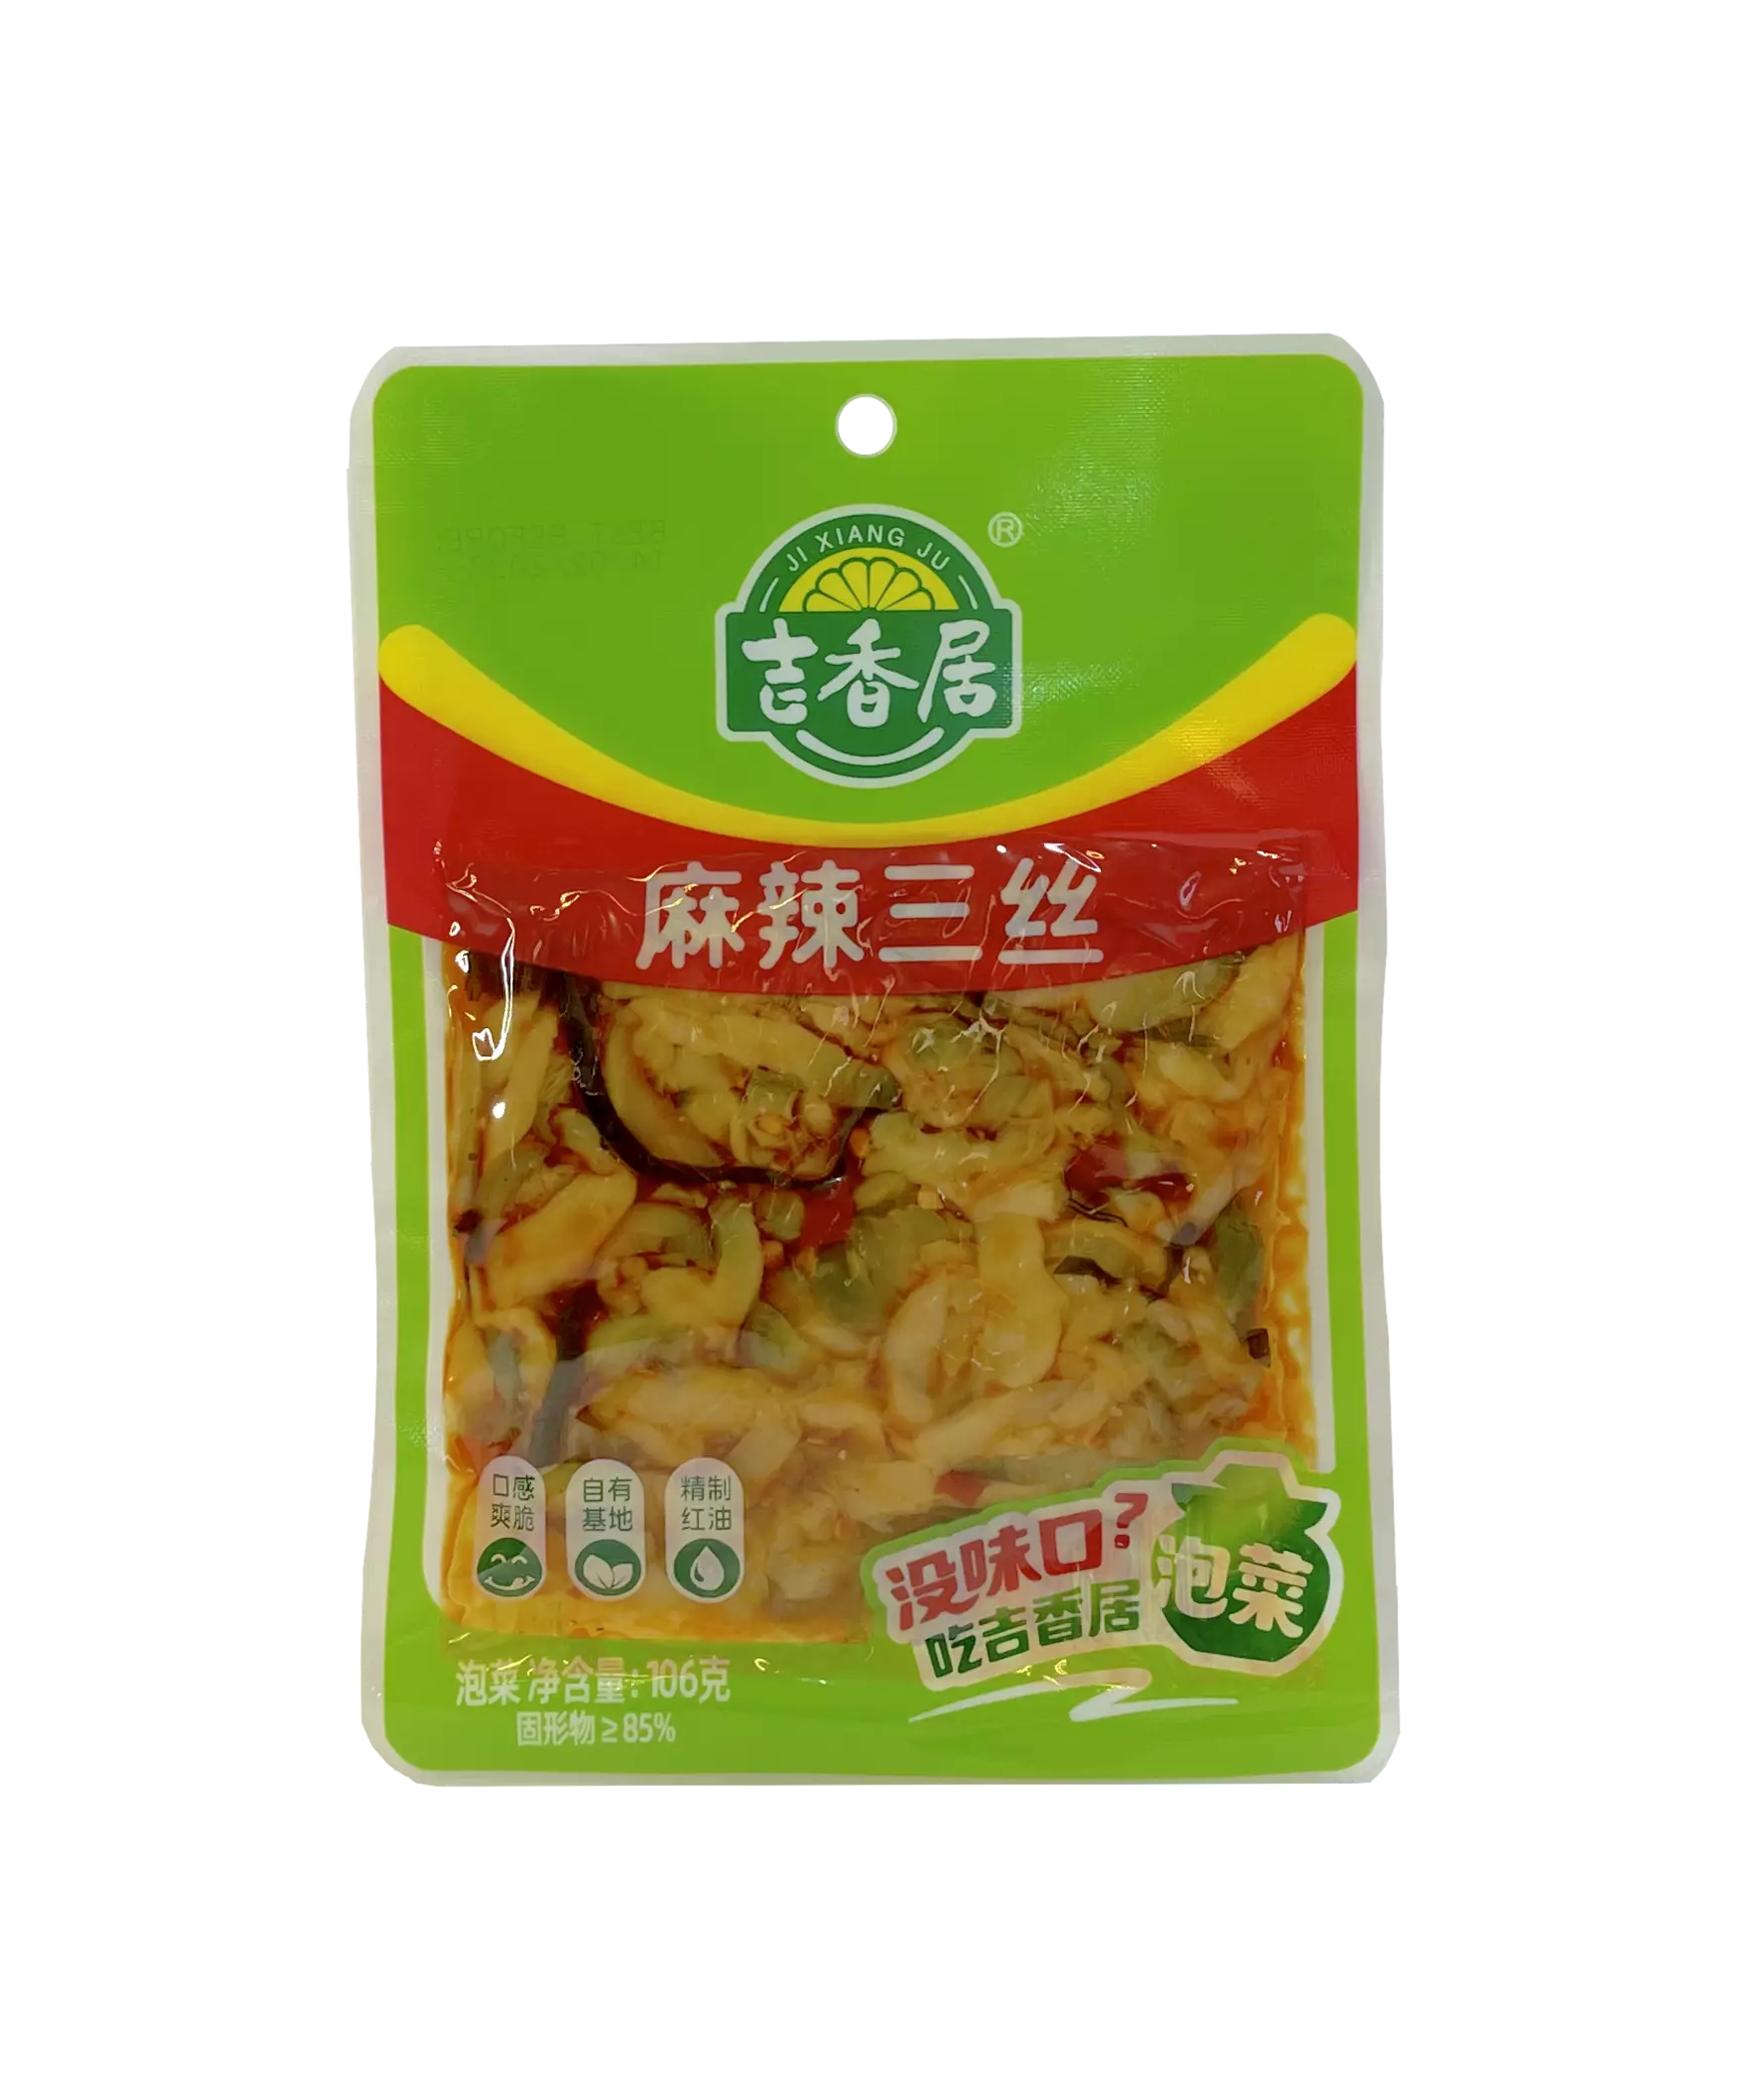 Mustard & Radish Strips With Mala / Chili Flavour 106g JIXiangJu China